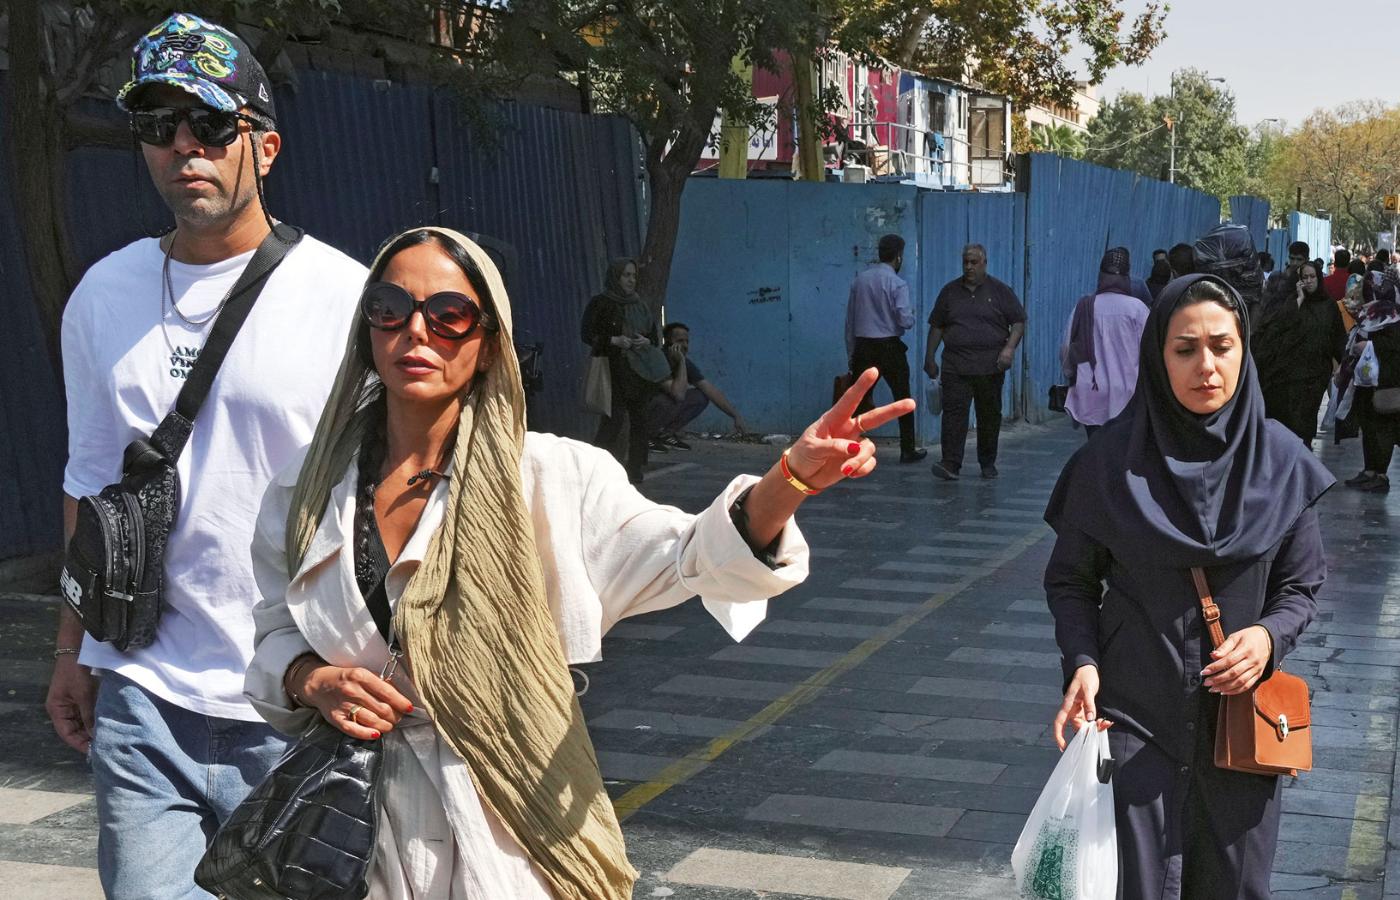 Kobiety w Iranie coraz śmielej pokazują włosy na ulicach, a w całym kraju regularnie dochodzi do antyreżimowych demonstracji.